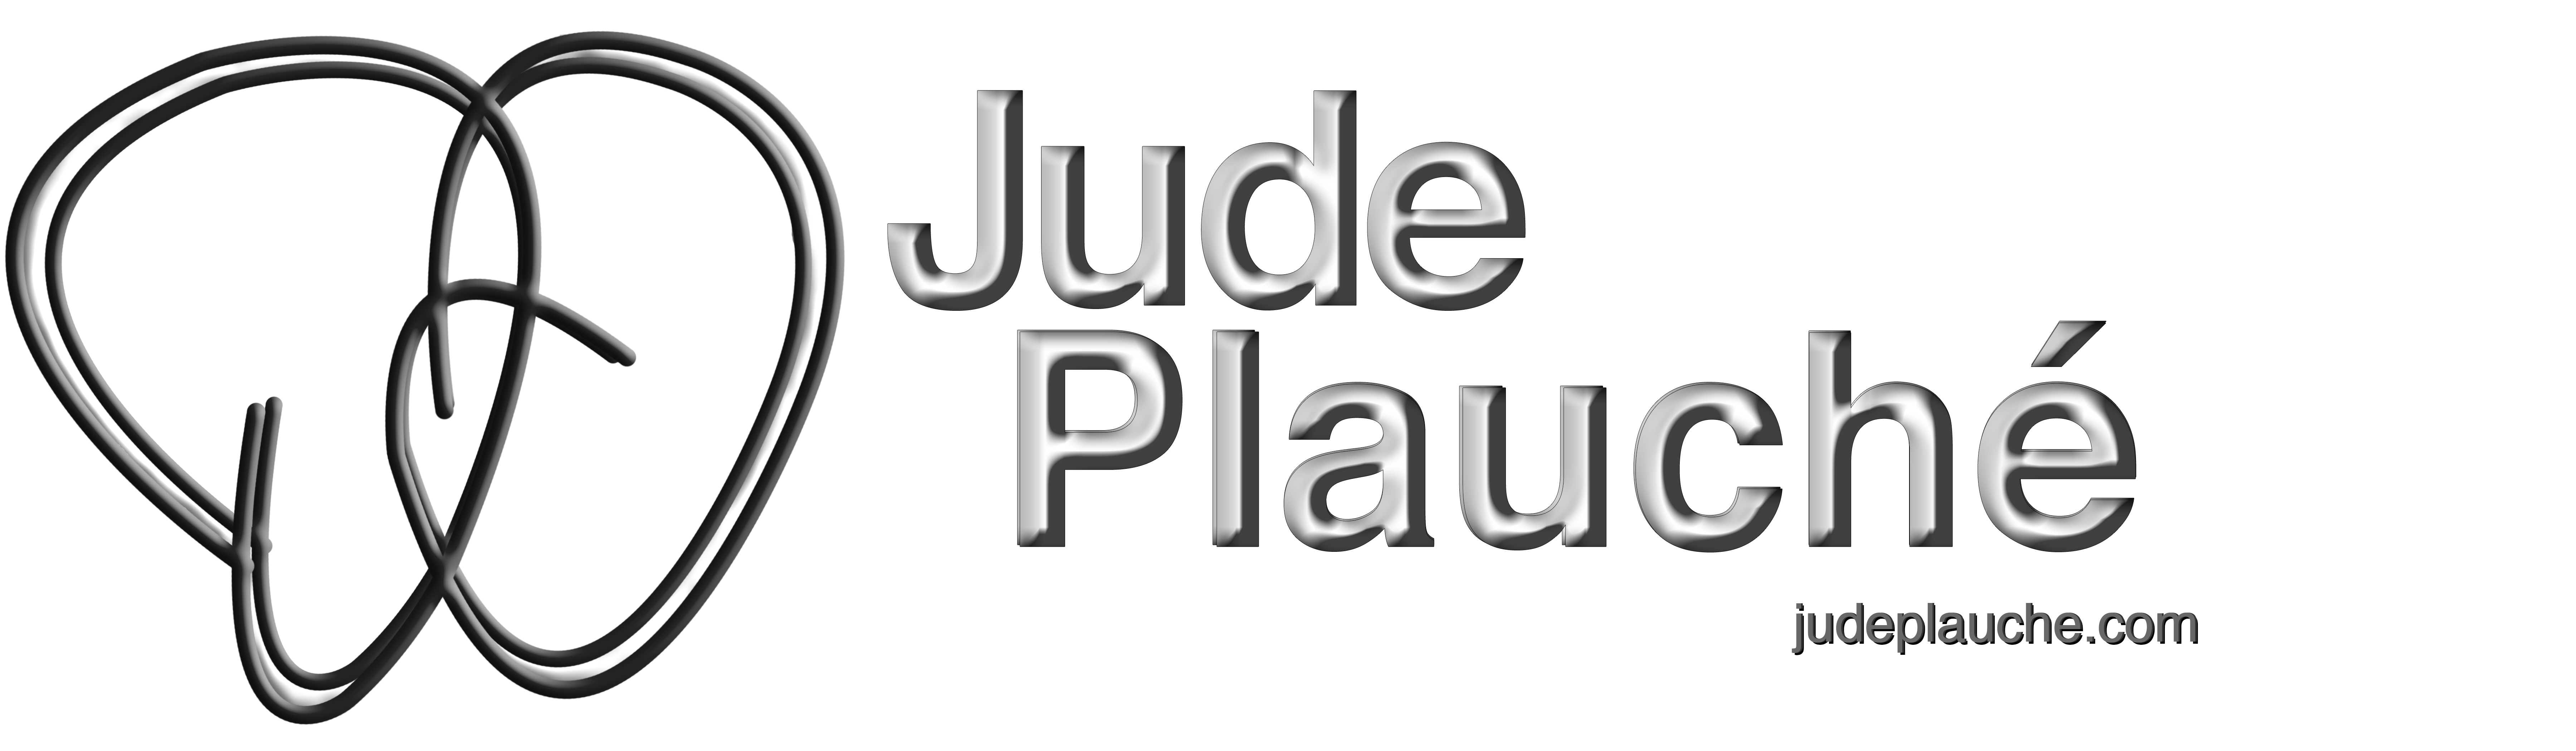 Jude Plauche My Portfolio